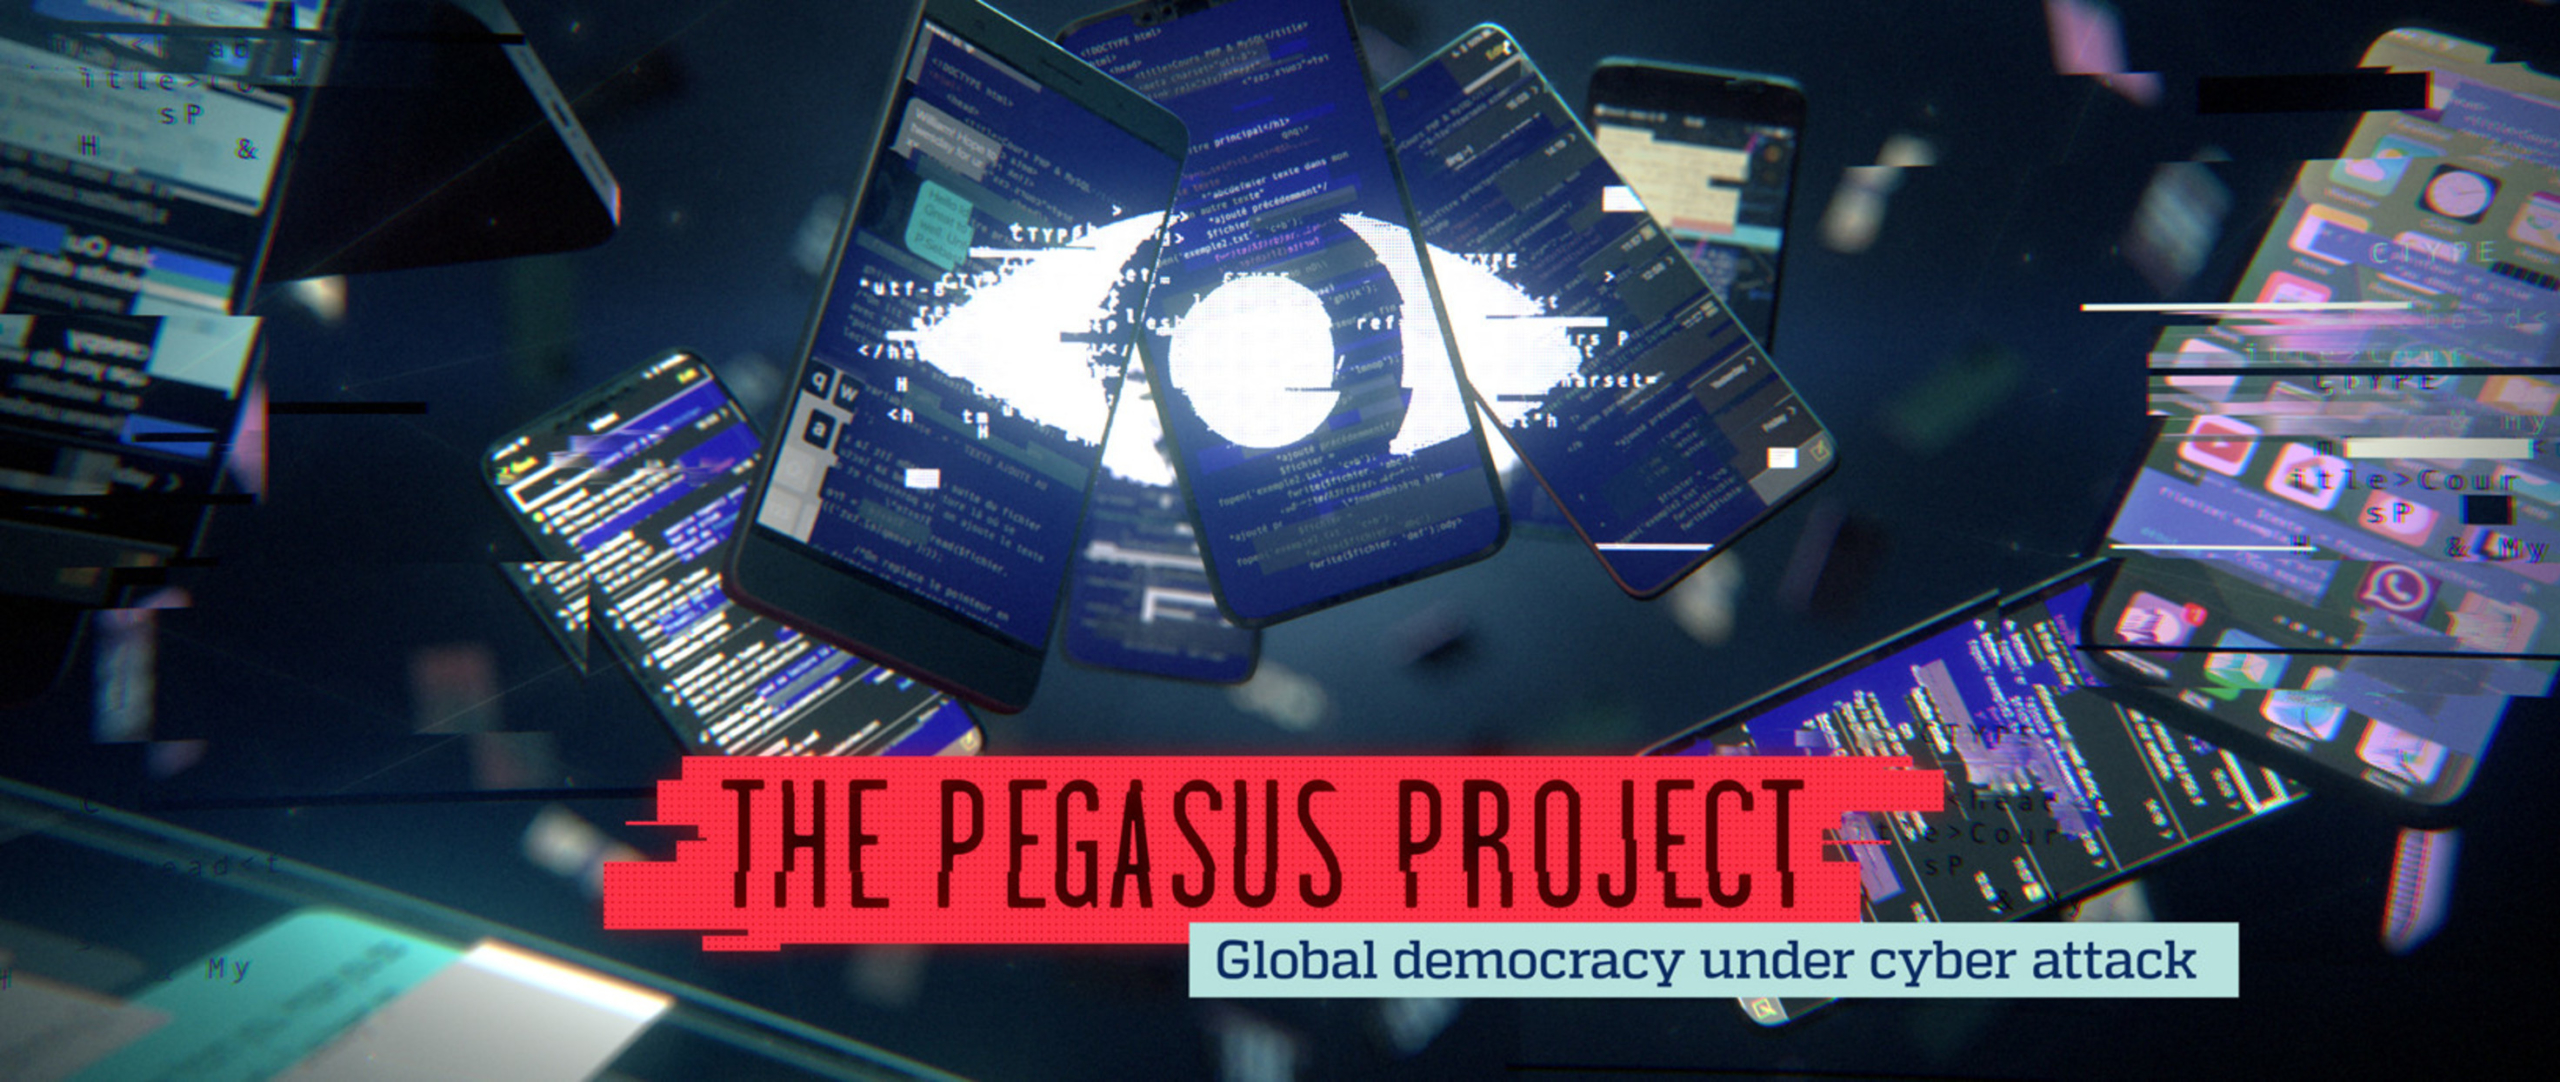 بعد مضي عام على مشروع بيغاسوس: استمرار أزمة برامج التجسس إثر التقاعس في  اتخاذ إجراءات صارمة ضد قطاع صناعة برامج الرقابة - منظمة العفو الدولية